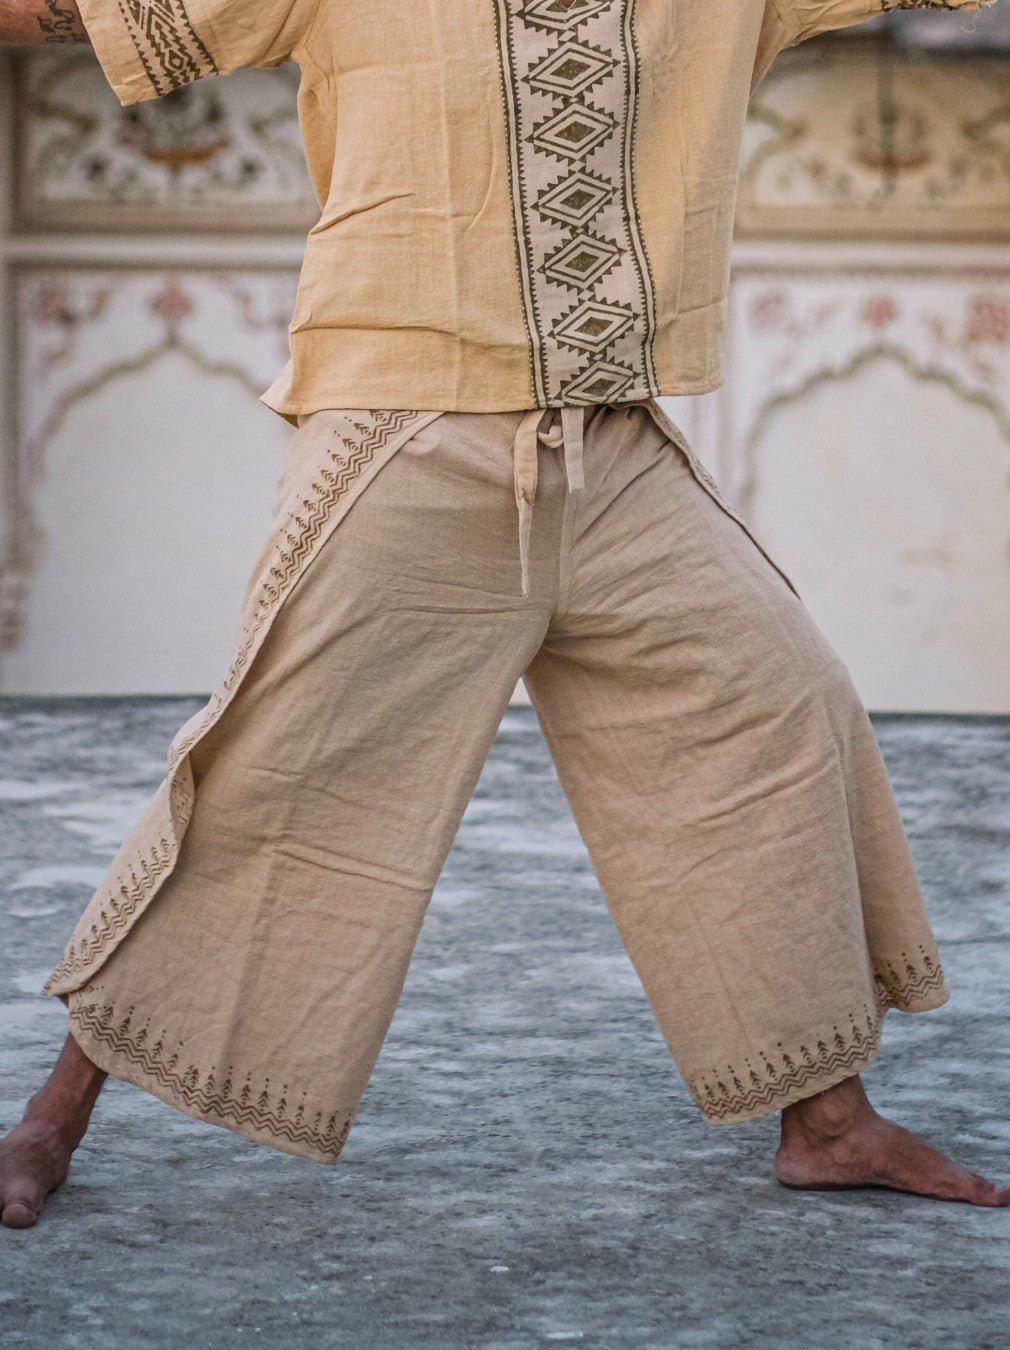 Thai Wrap Pants, Bohemian Wrap Pants